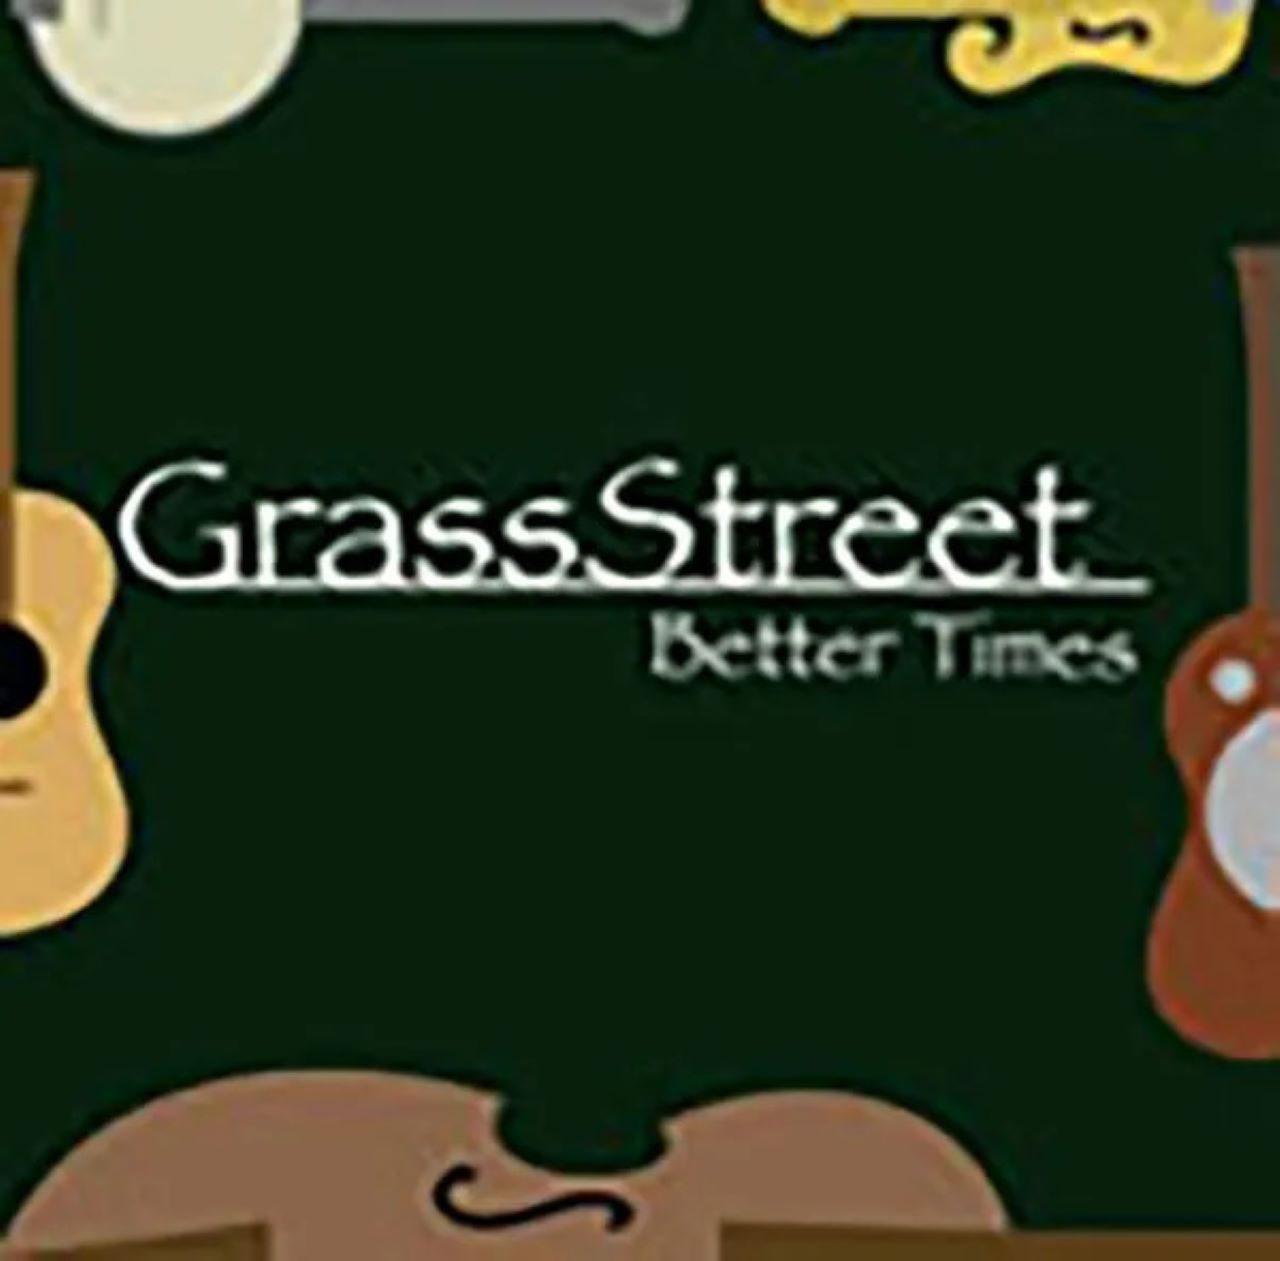 GrassStreet – Better Times cover album